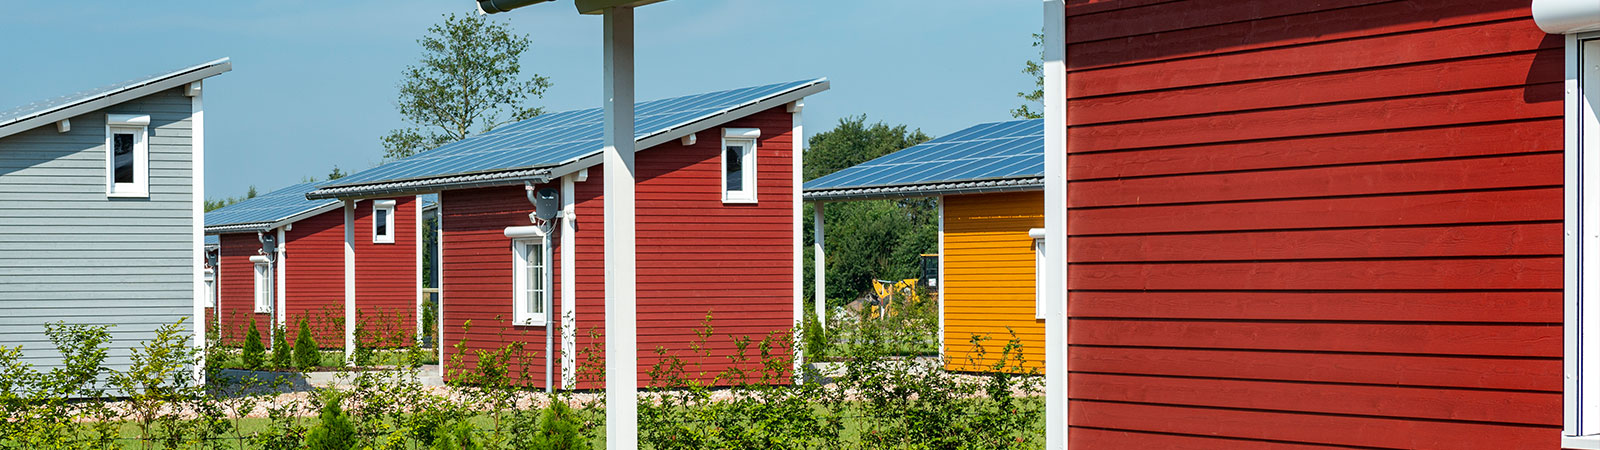 Osmo Beschichtungssysteme für Gartenhäuser und Carports außen – Ferienhäuser mit roter Holzfassade – industrielle Anwendung